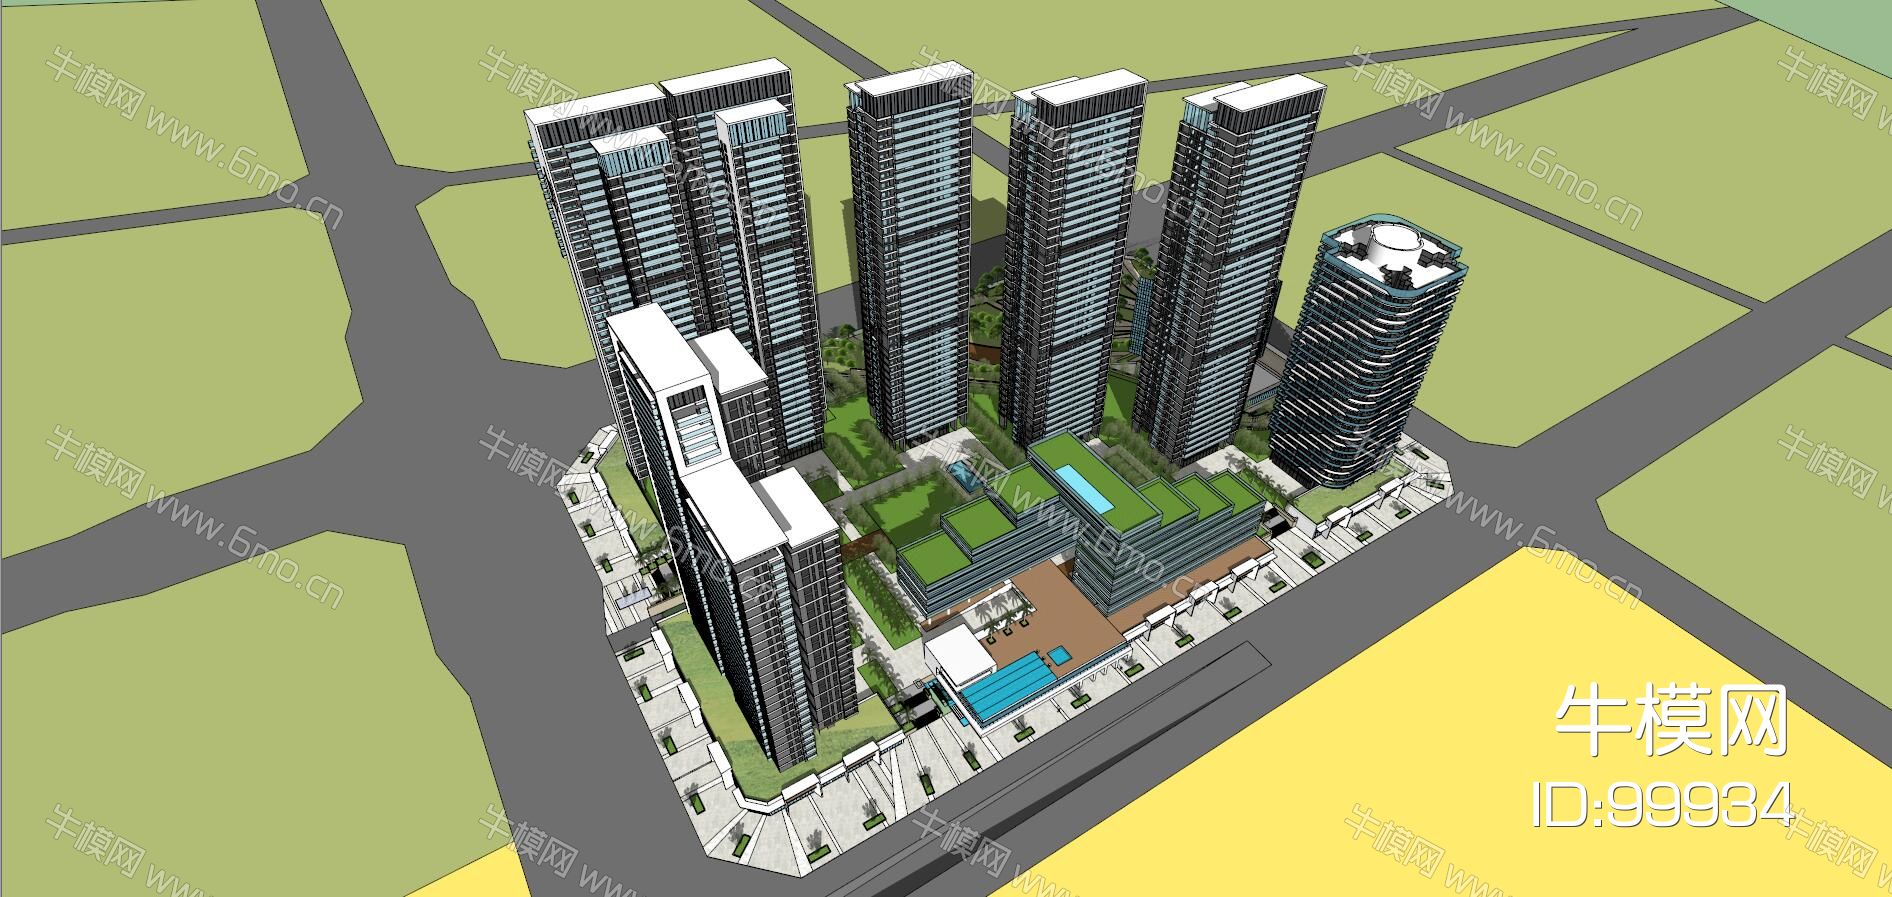 高层住宅+酒店公寓总体模型